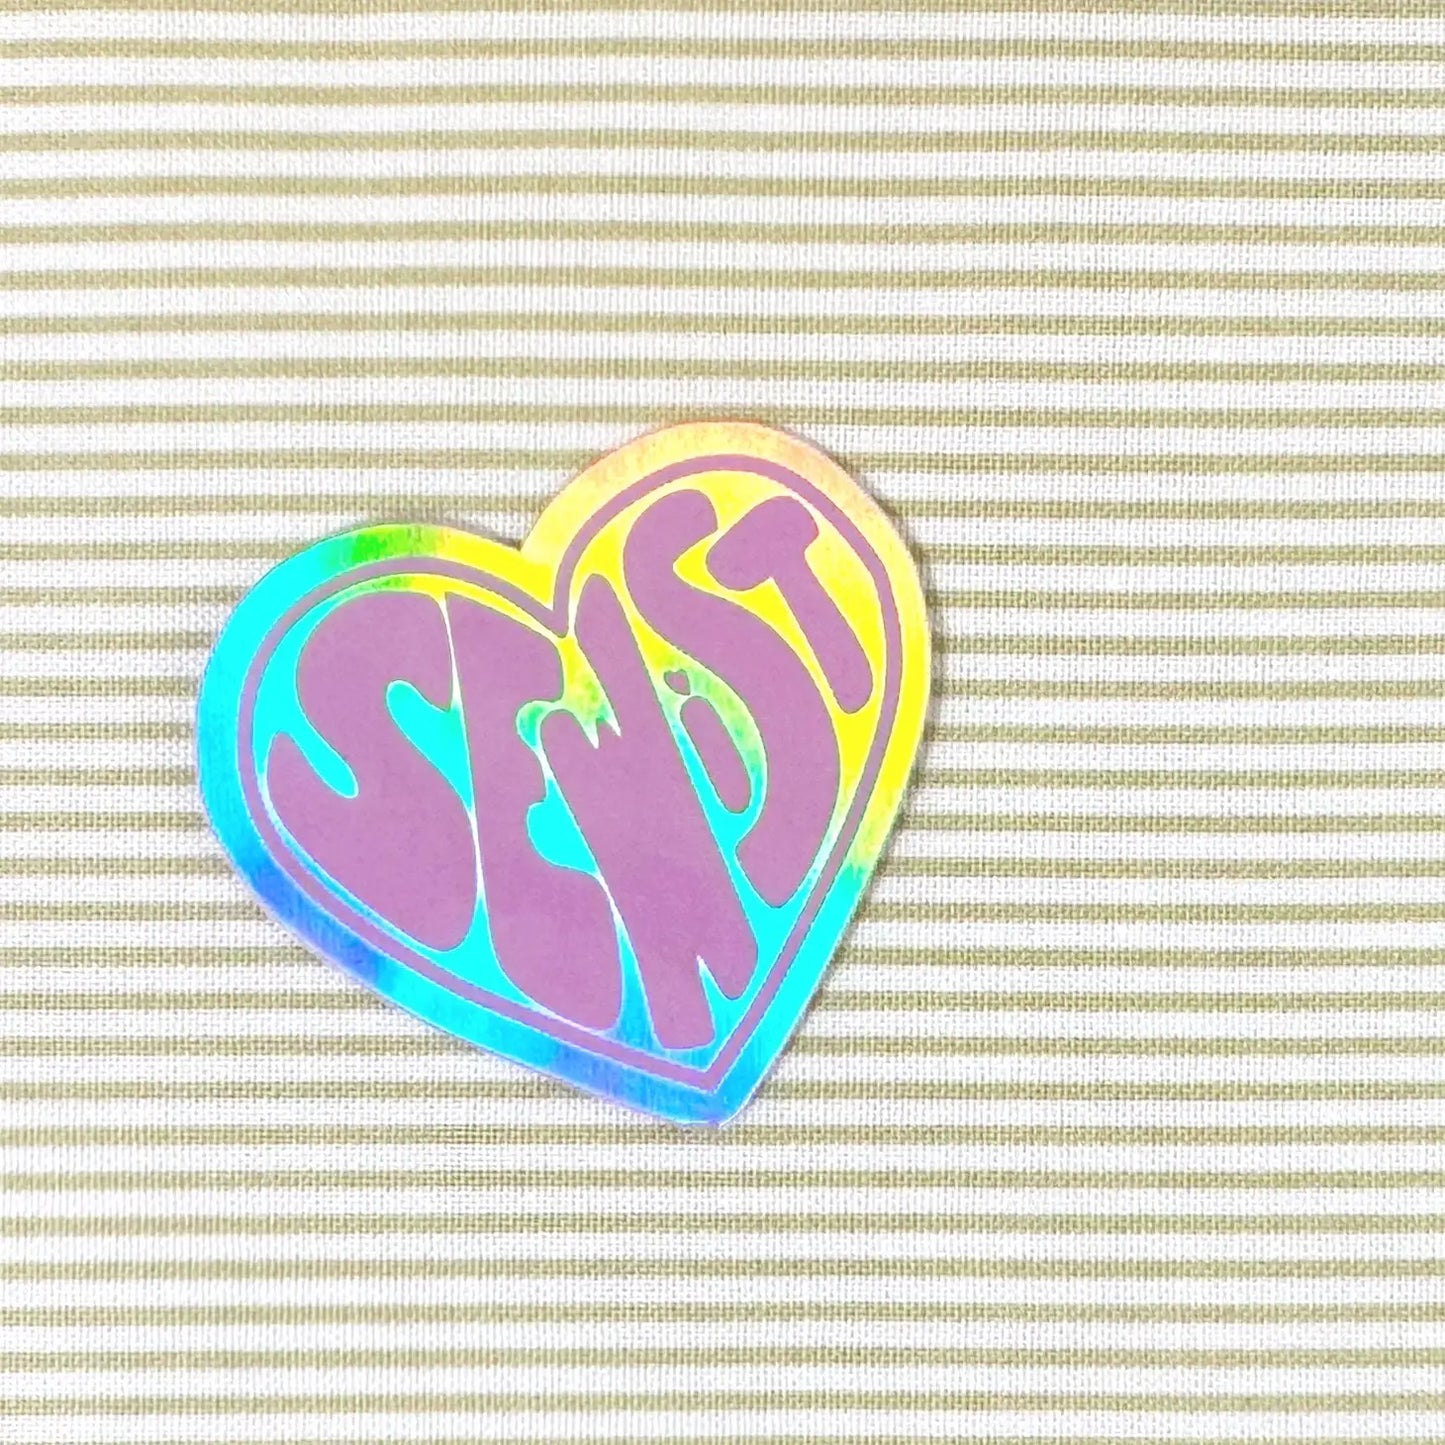 'Sewist' Holographic Vinyl Sticker - Whipstitch Handmade